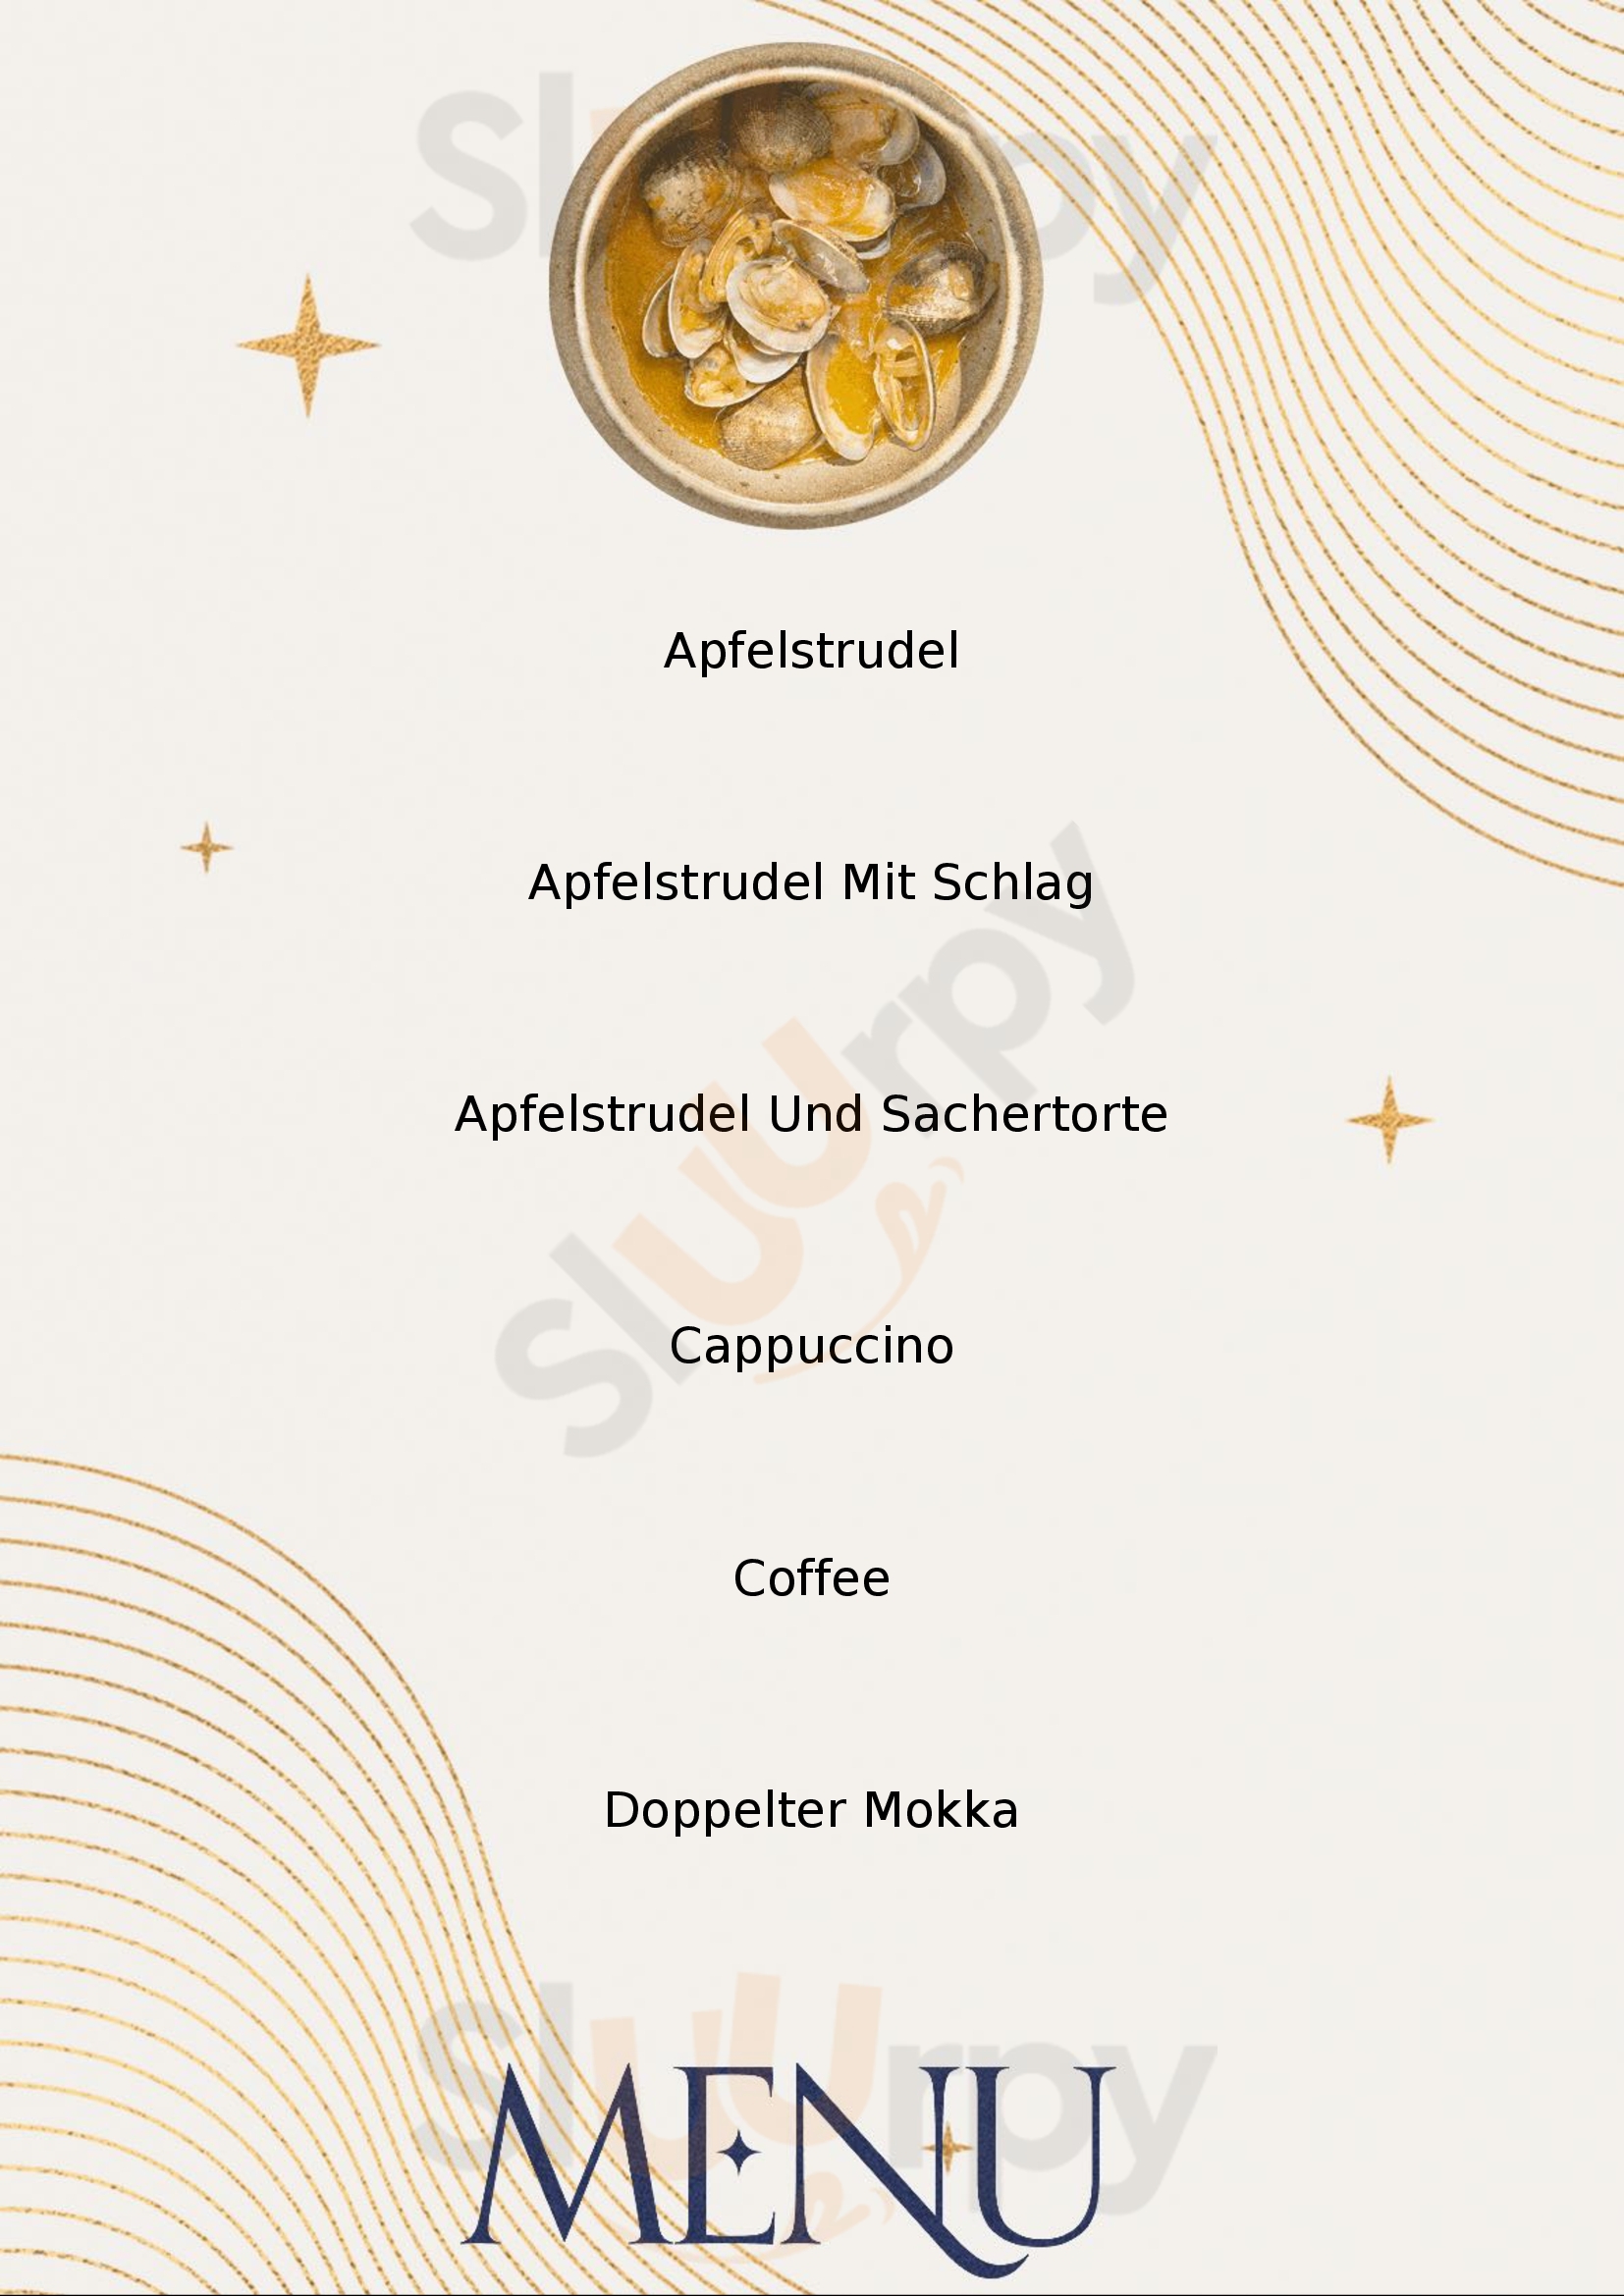 Café Bräunerhof Wien Menu - 1